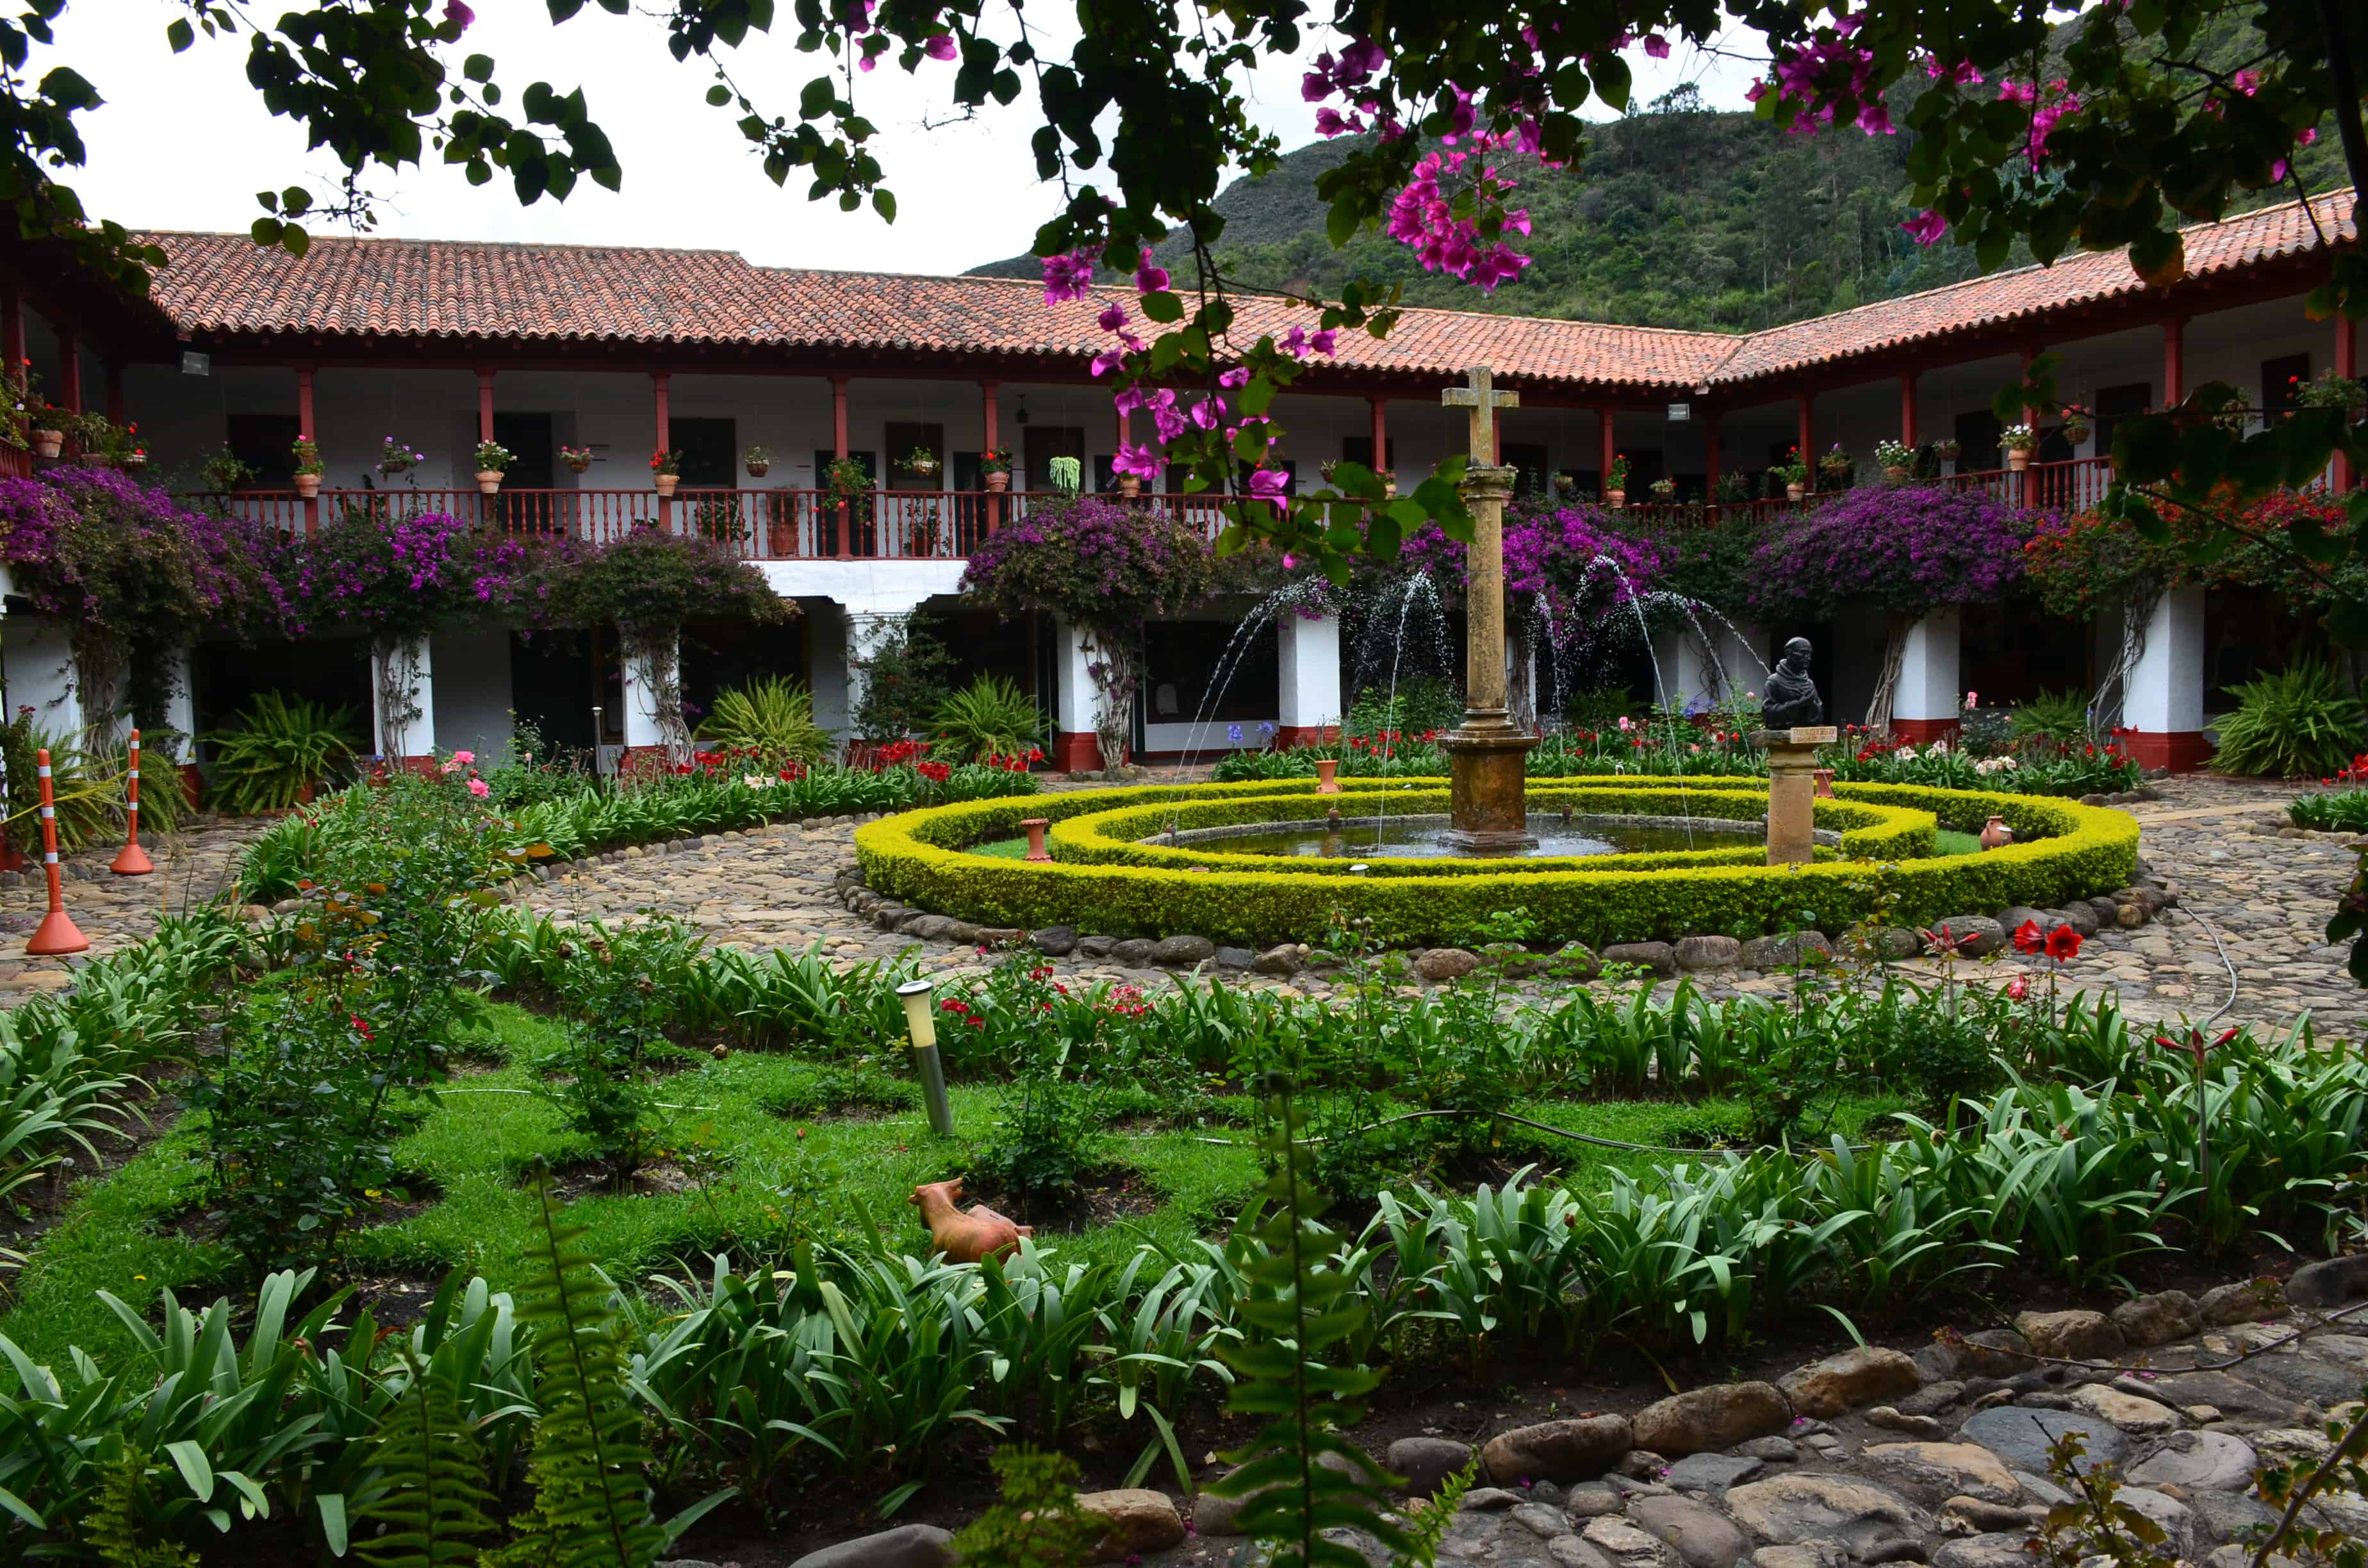 Courtyard at La Candelaria Monastery, Boyacá, Colombia